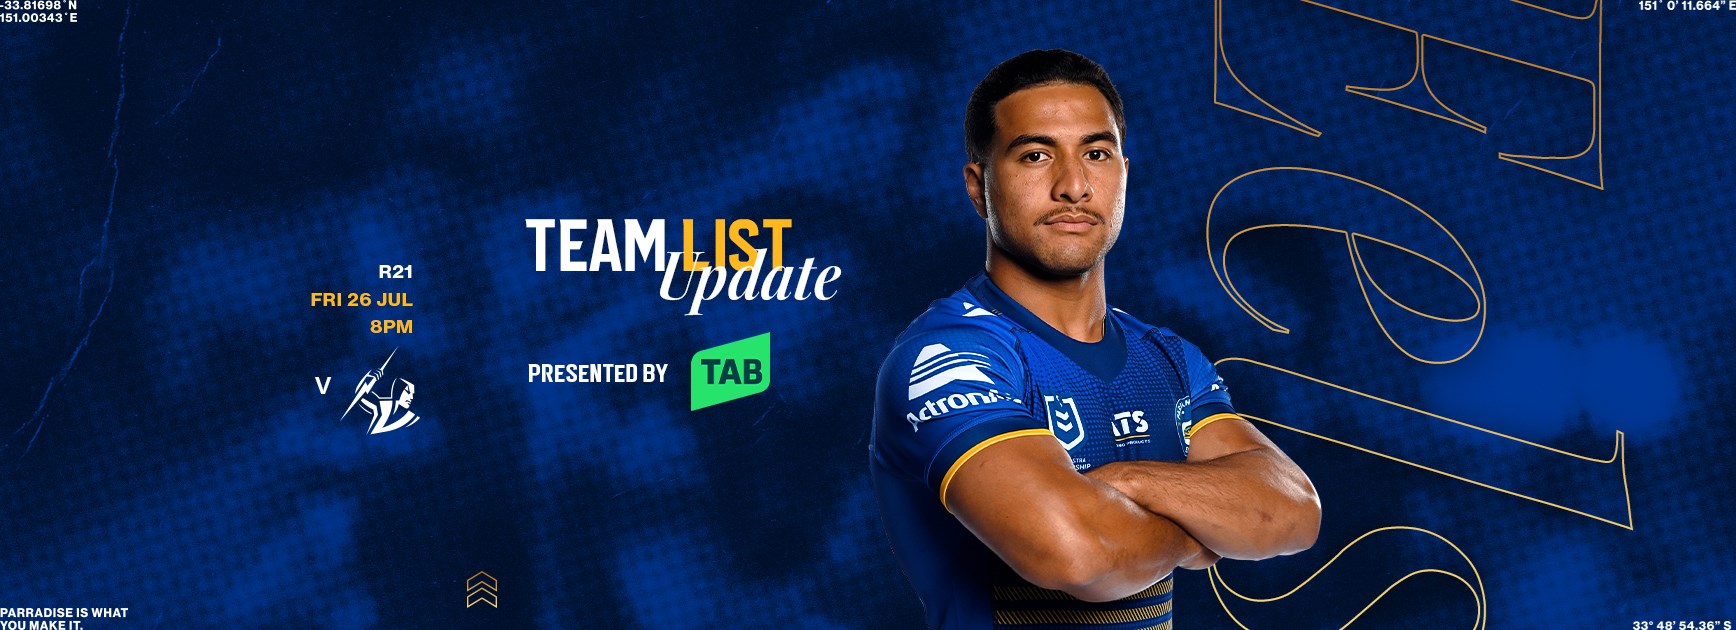 NRL Team List Update: Round 21